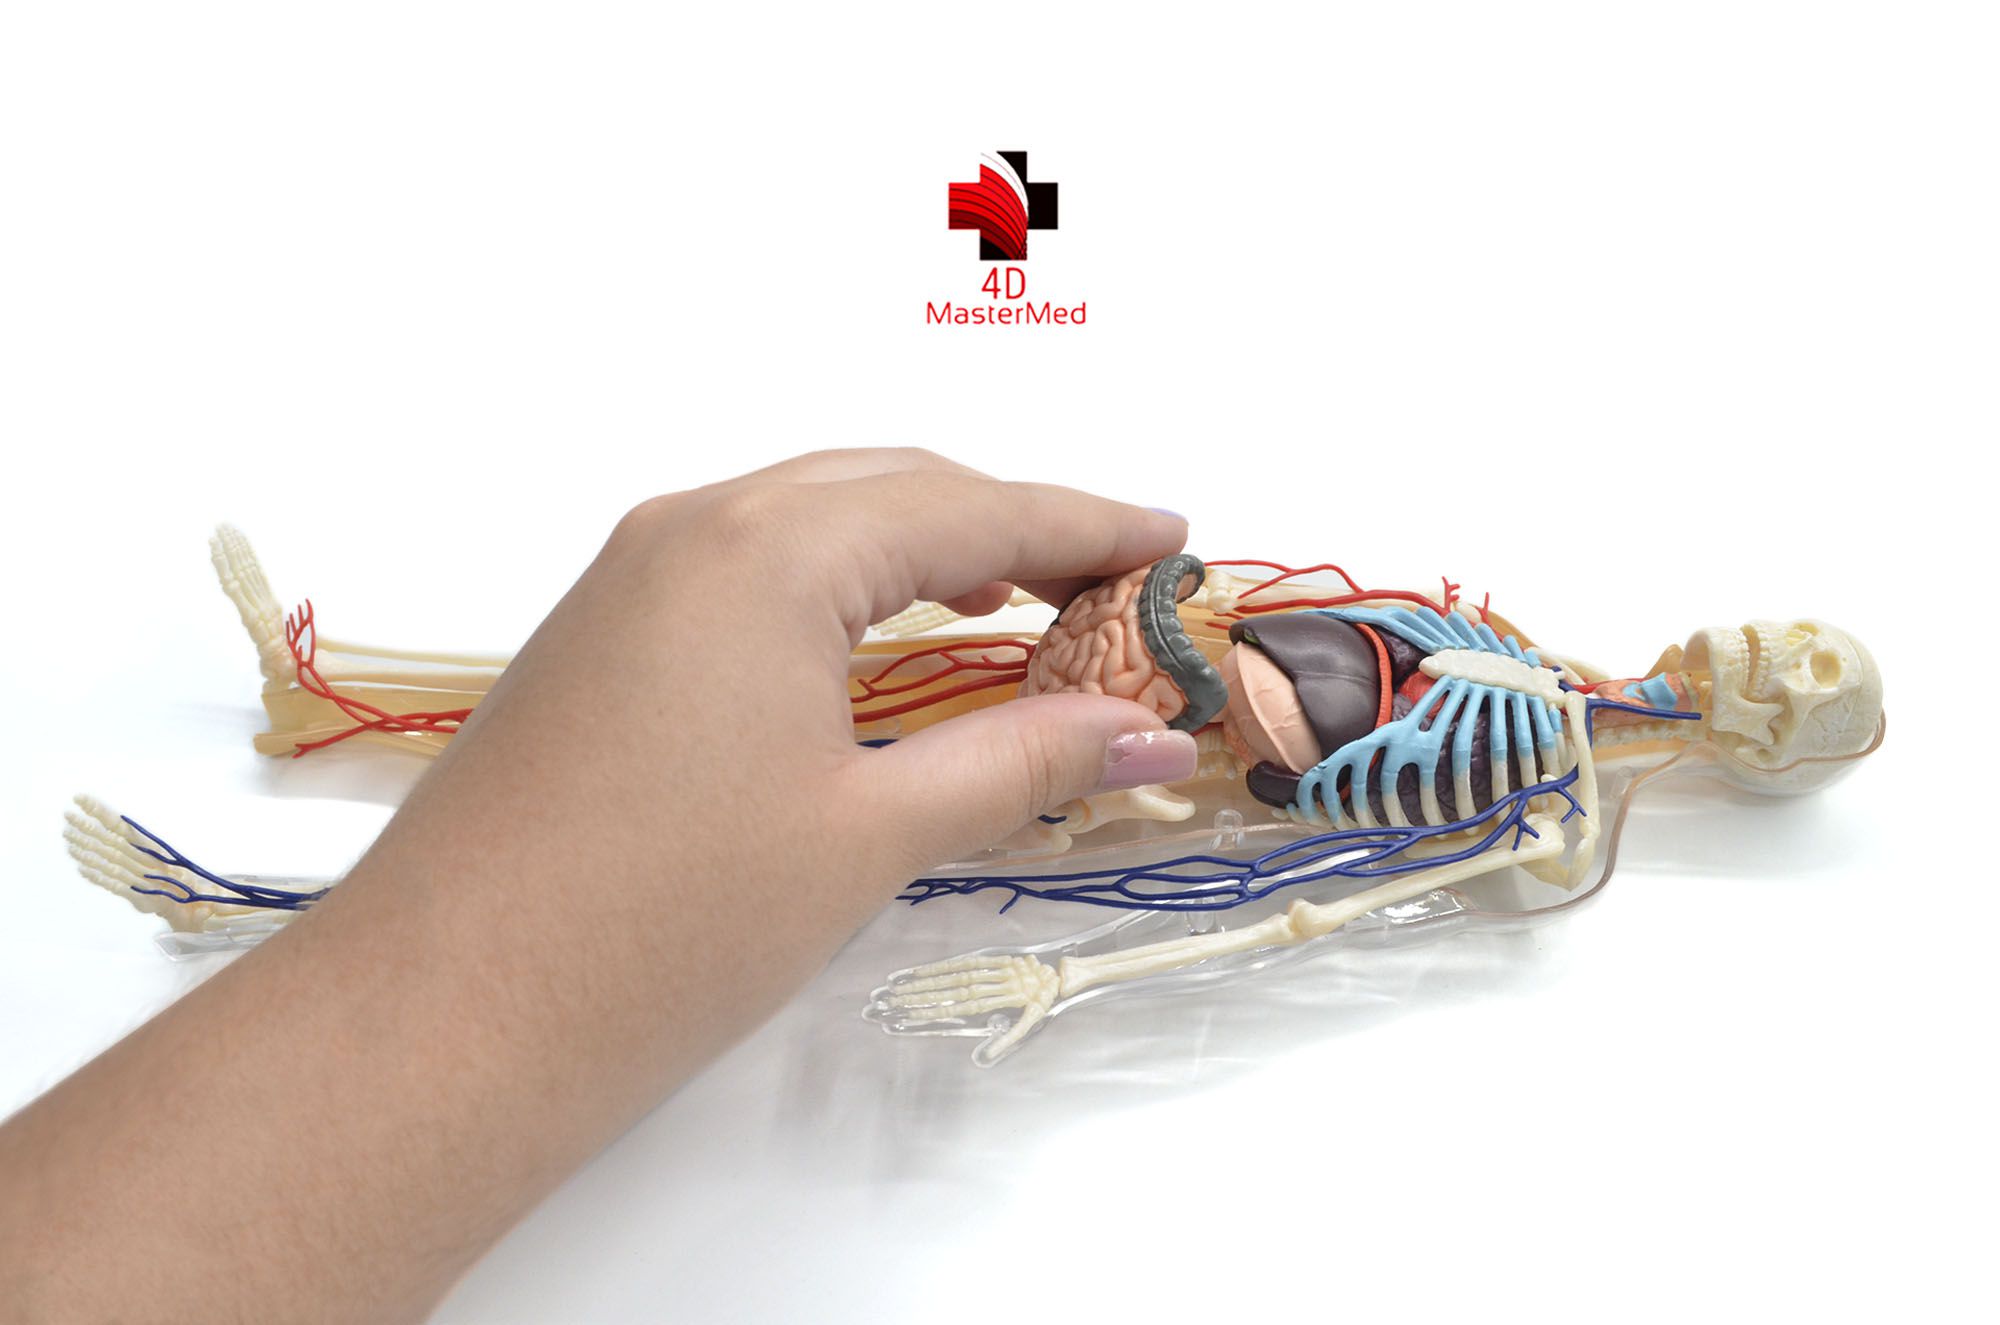 Anatomia do Corpo Humano - 4D MasterMed